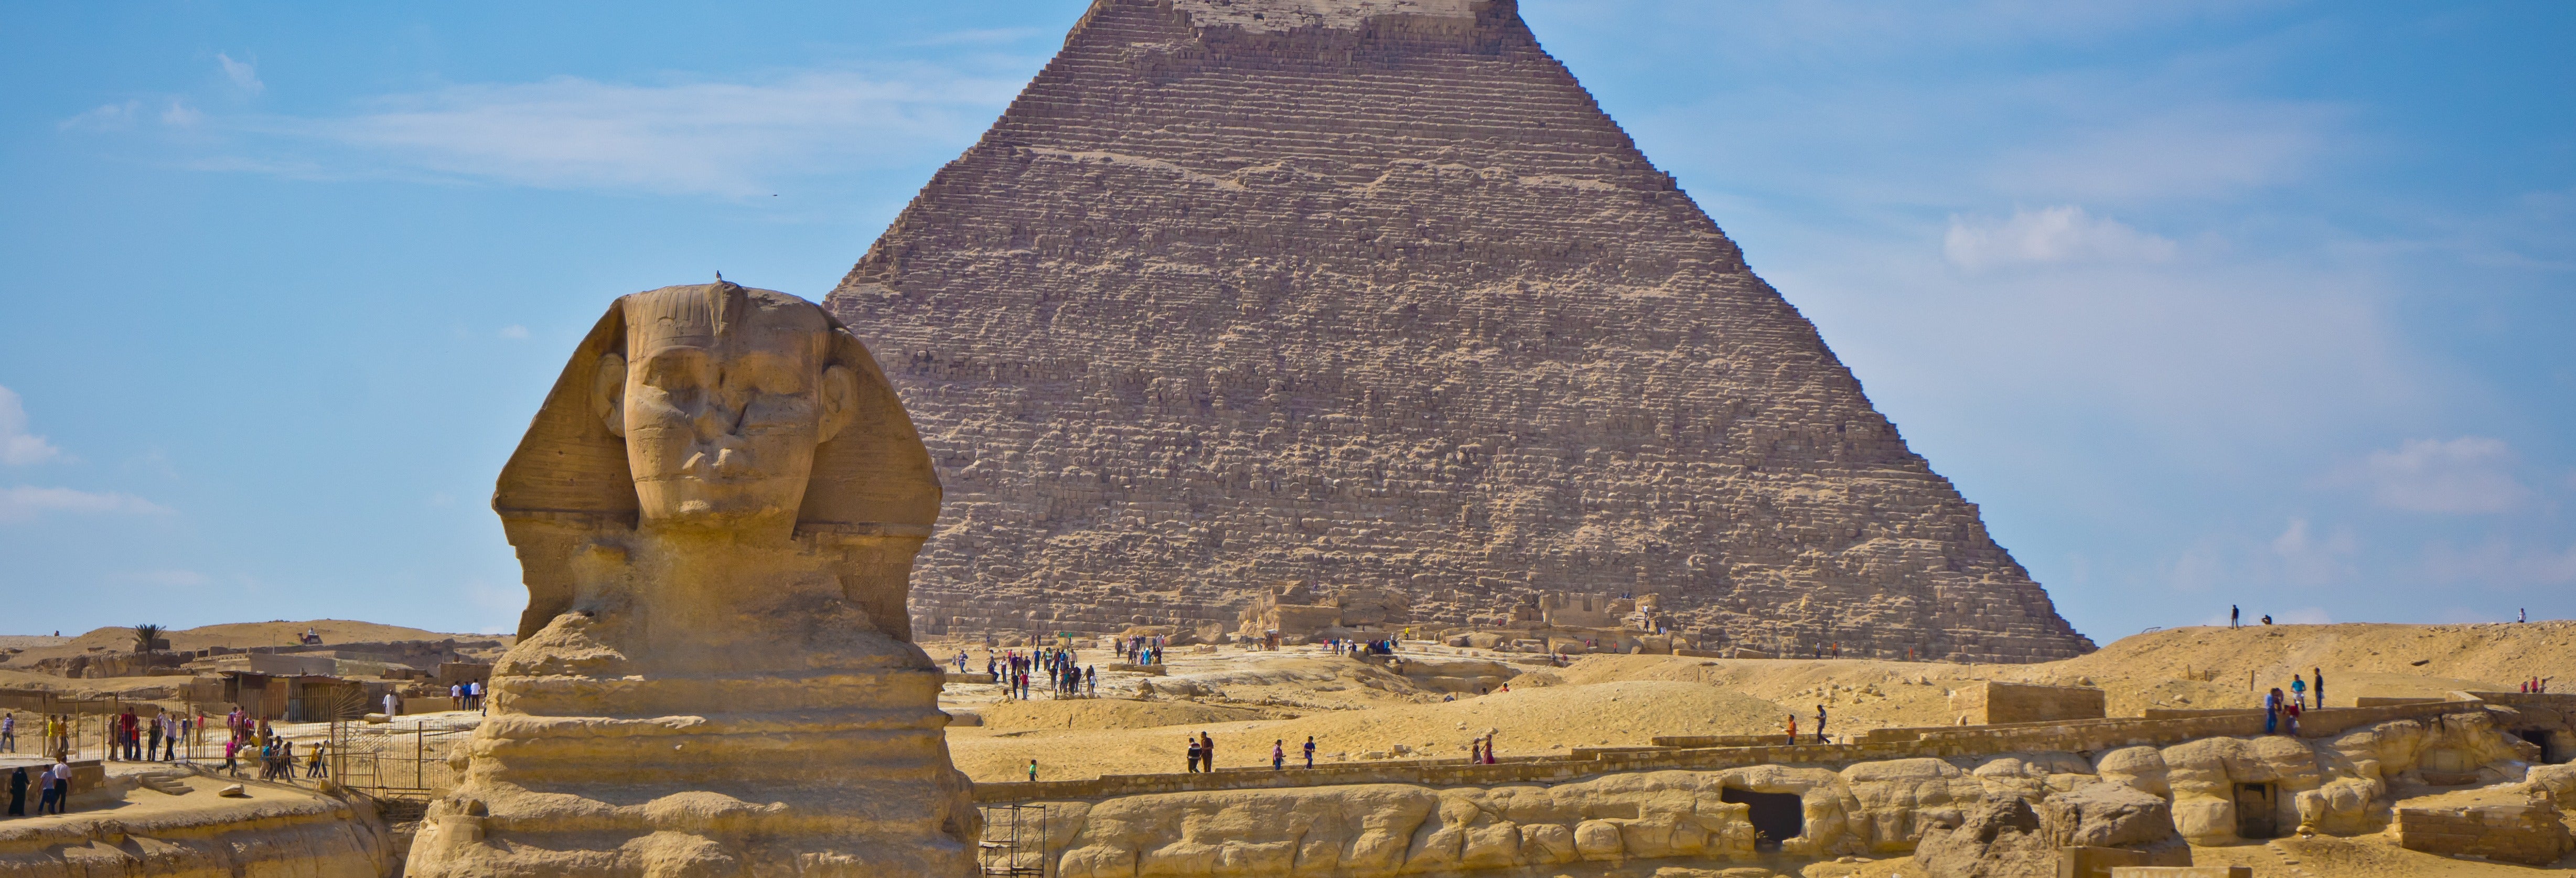 Excursión a El Cairo y las pirámides de Giza desde Port Said